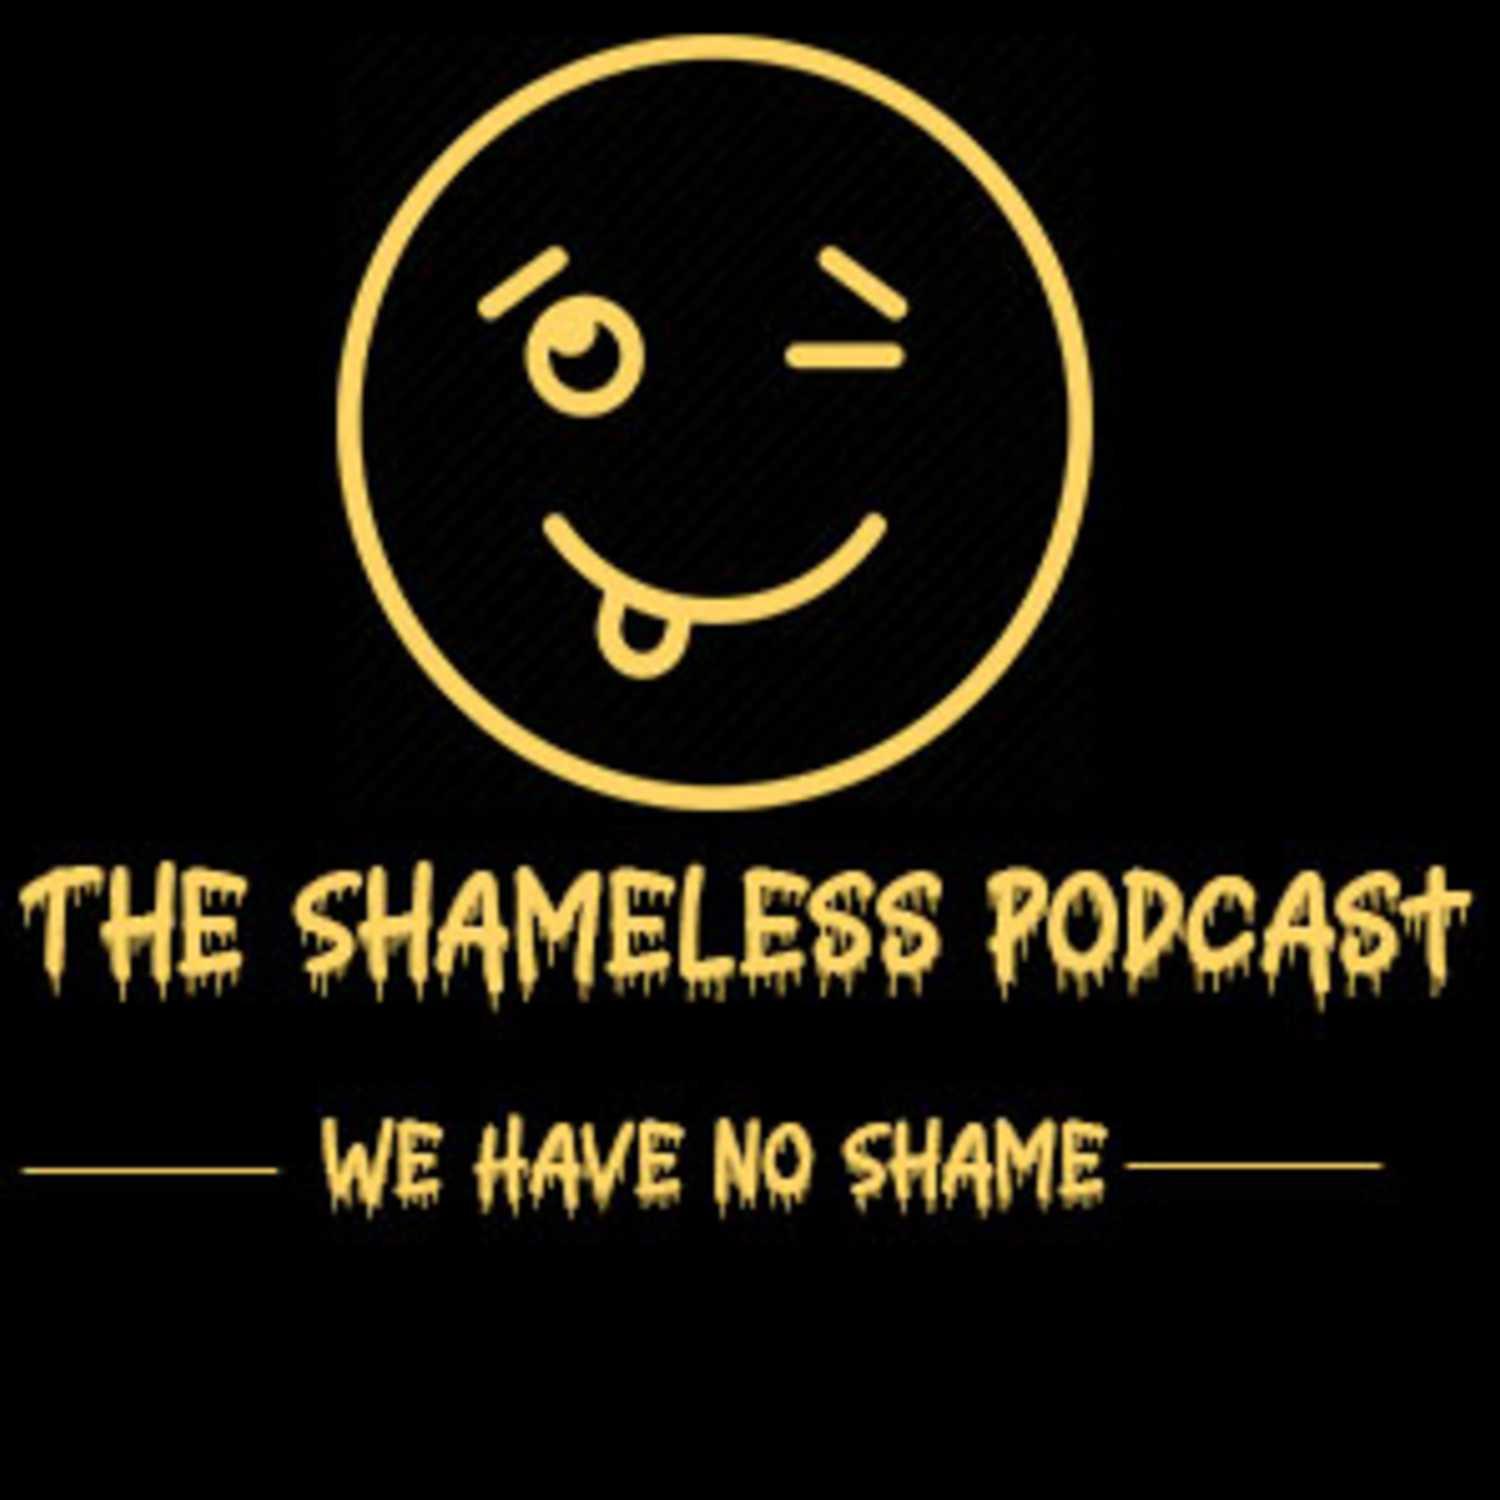 The Shameless Podcast